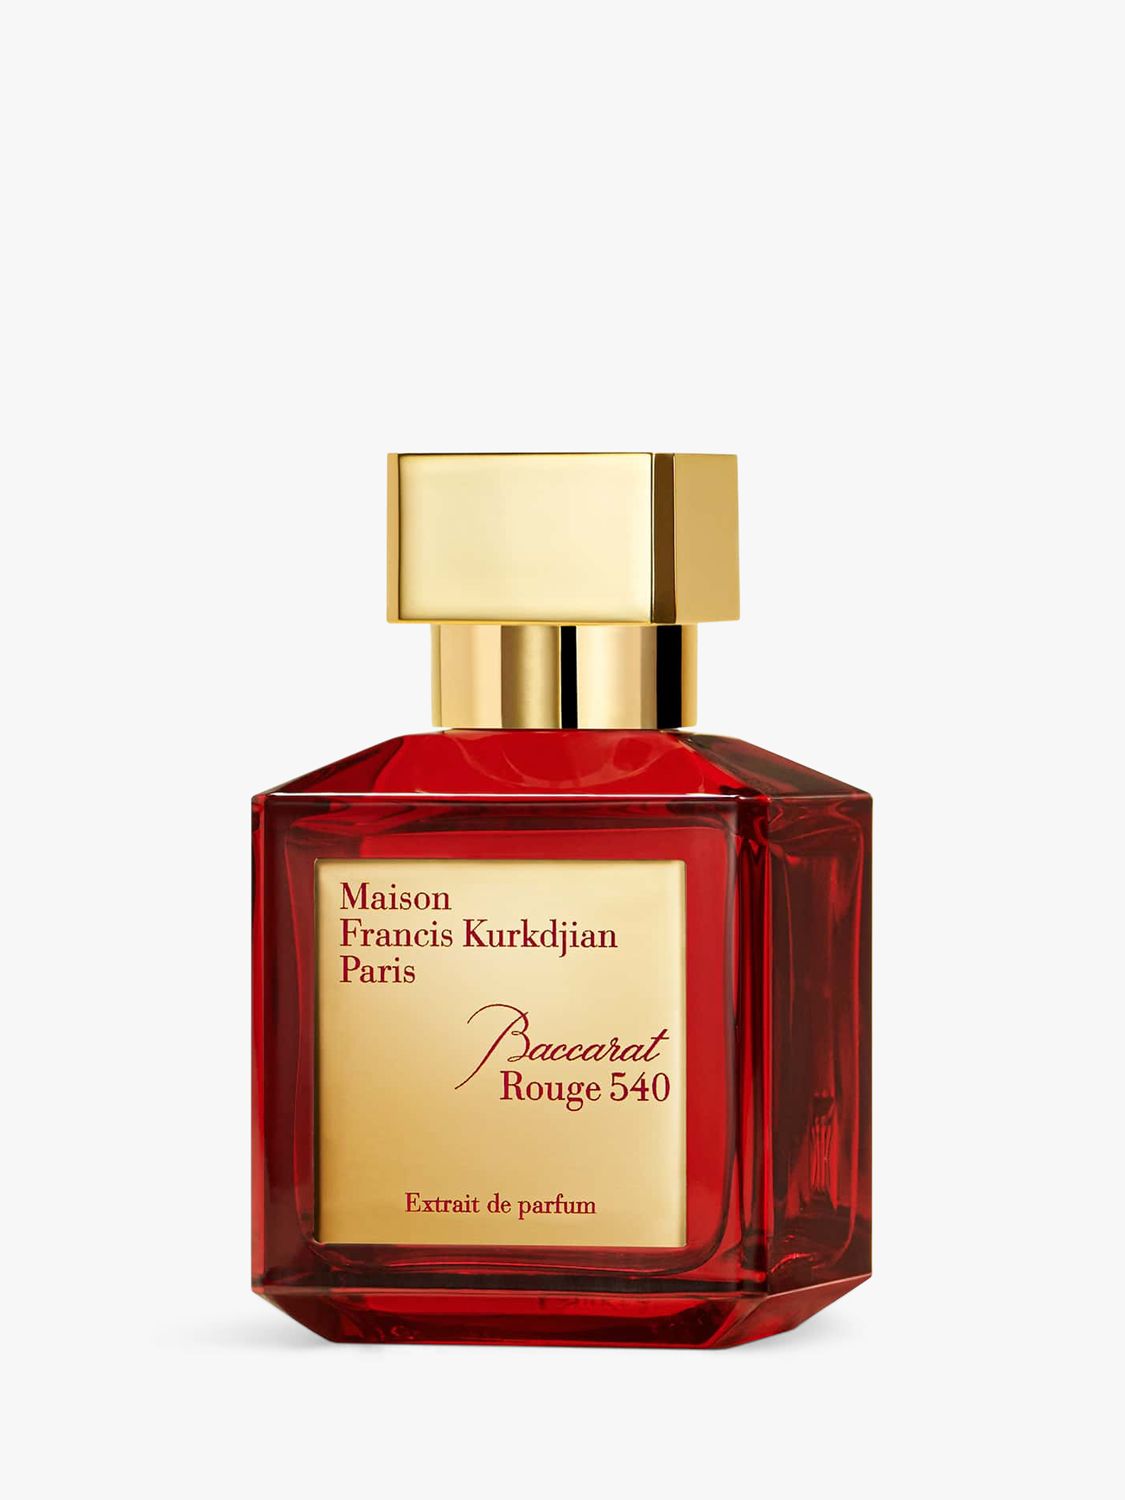 Maison Francis Kurkdjian Baccarat Rouge 540 Extrait de Parfum, 70ml 1